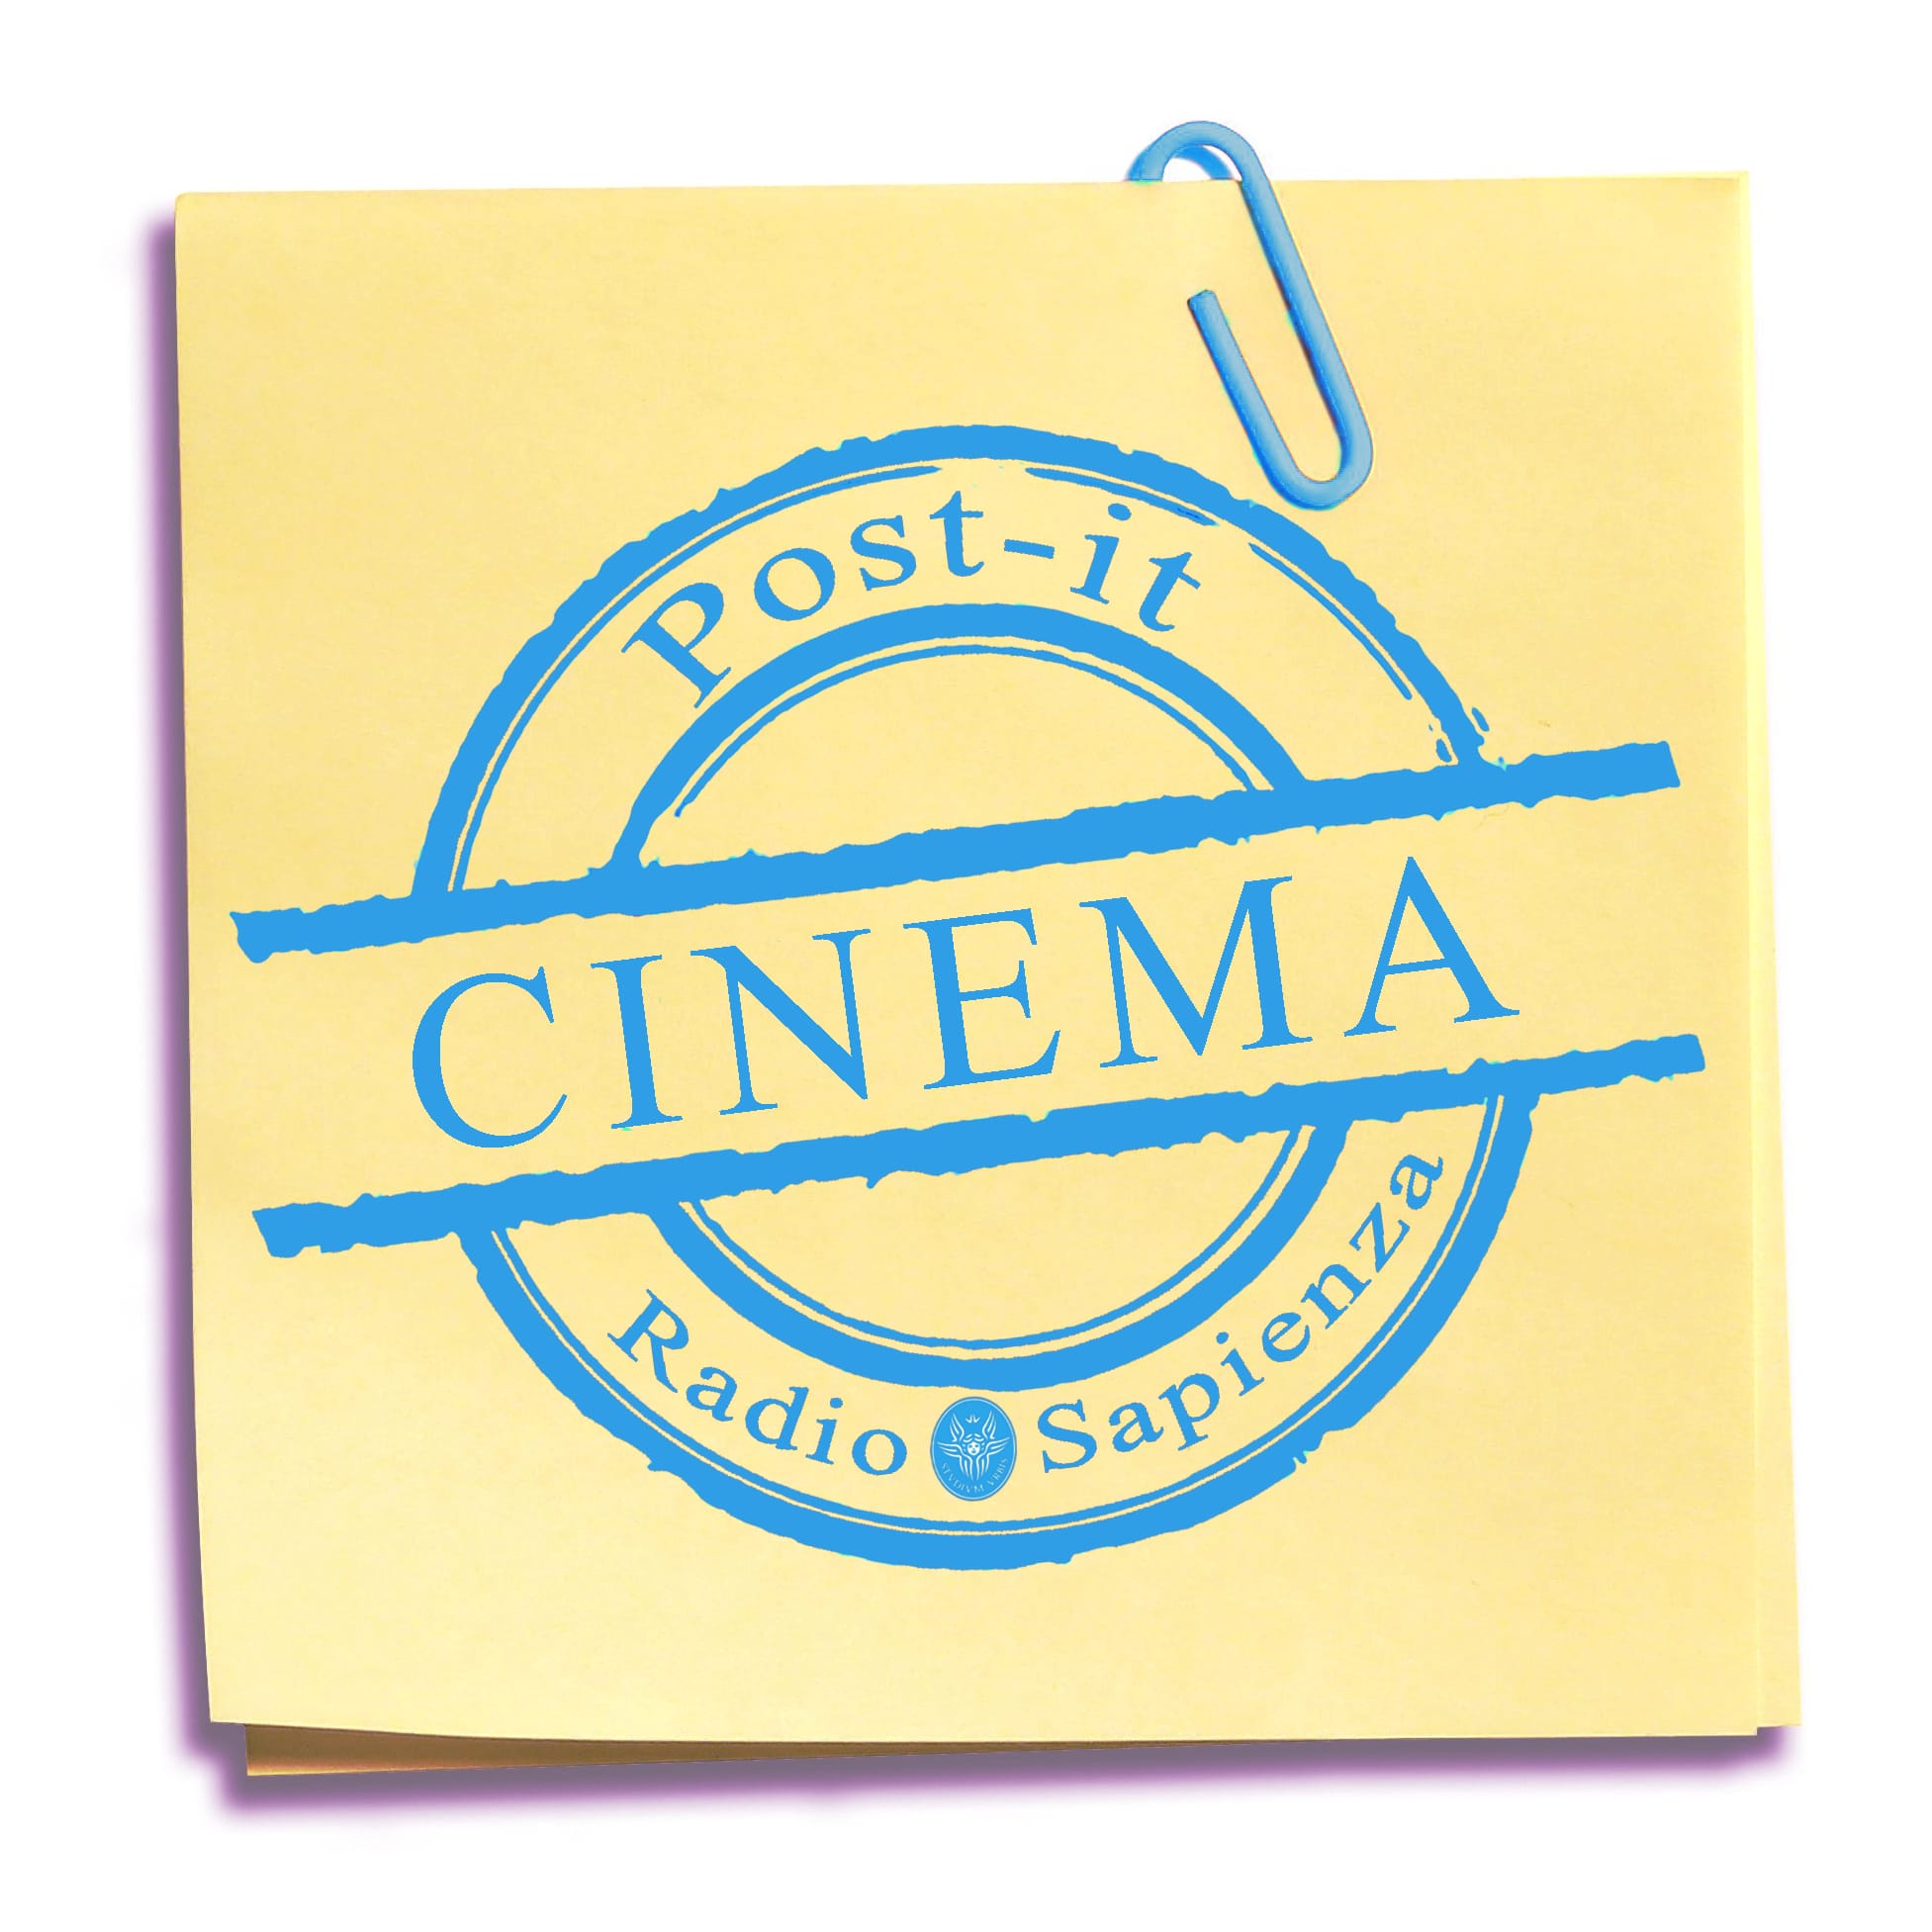 Post-it Cinema – Venerdì 12 Novembre